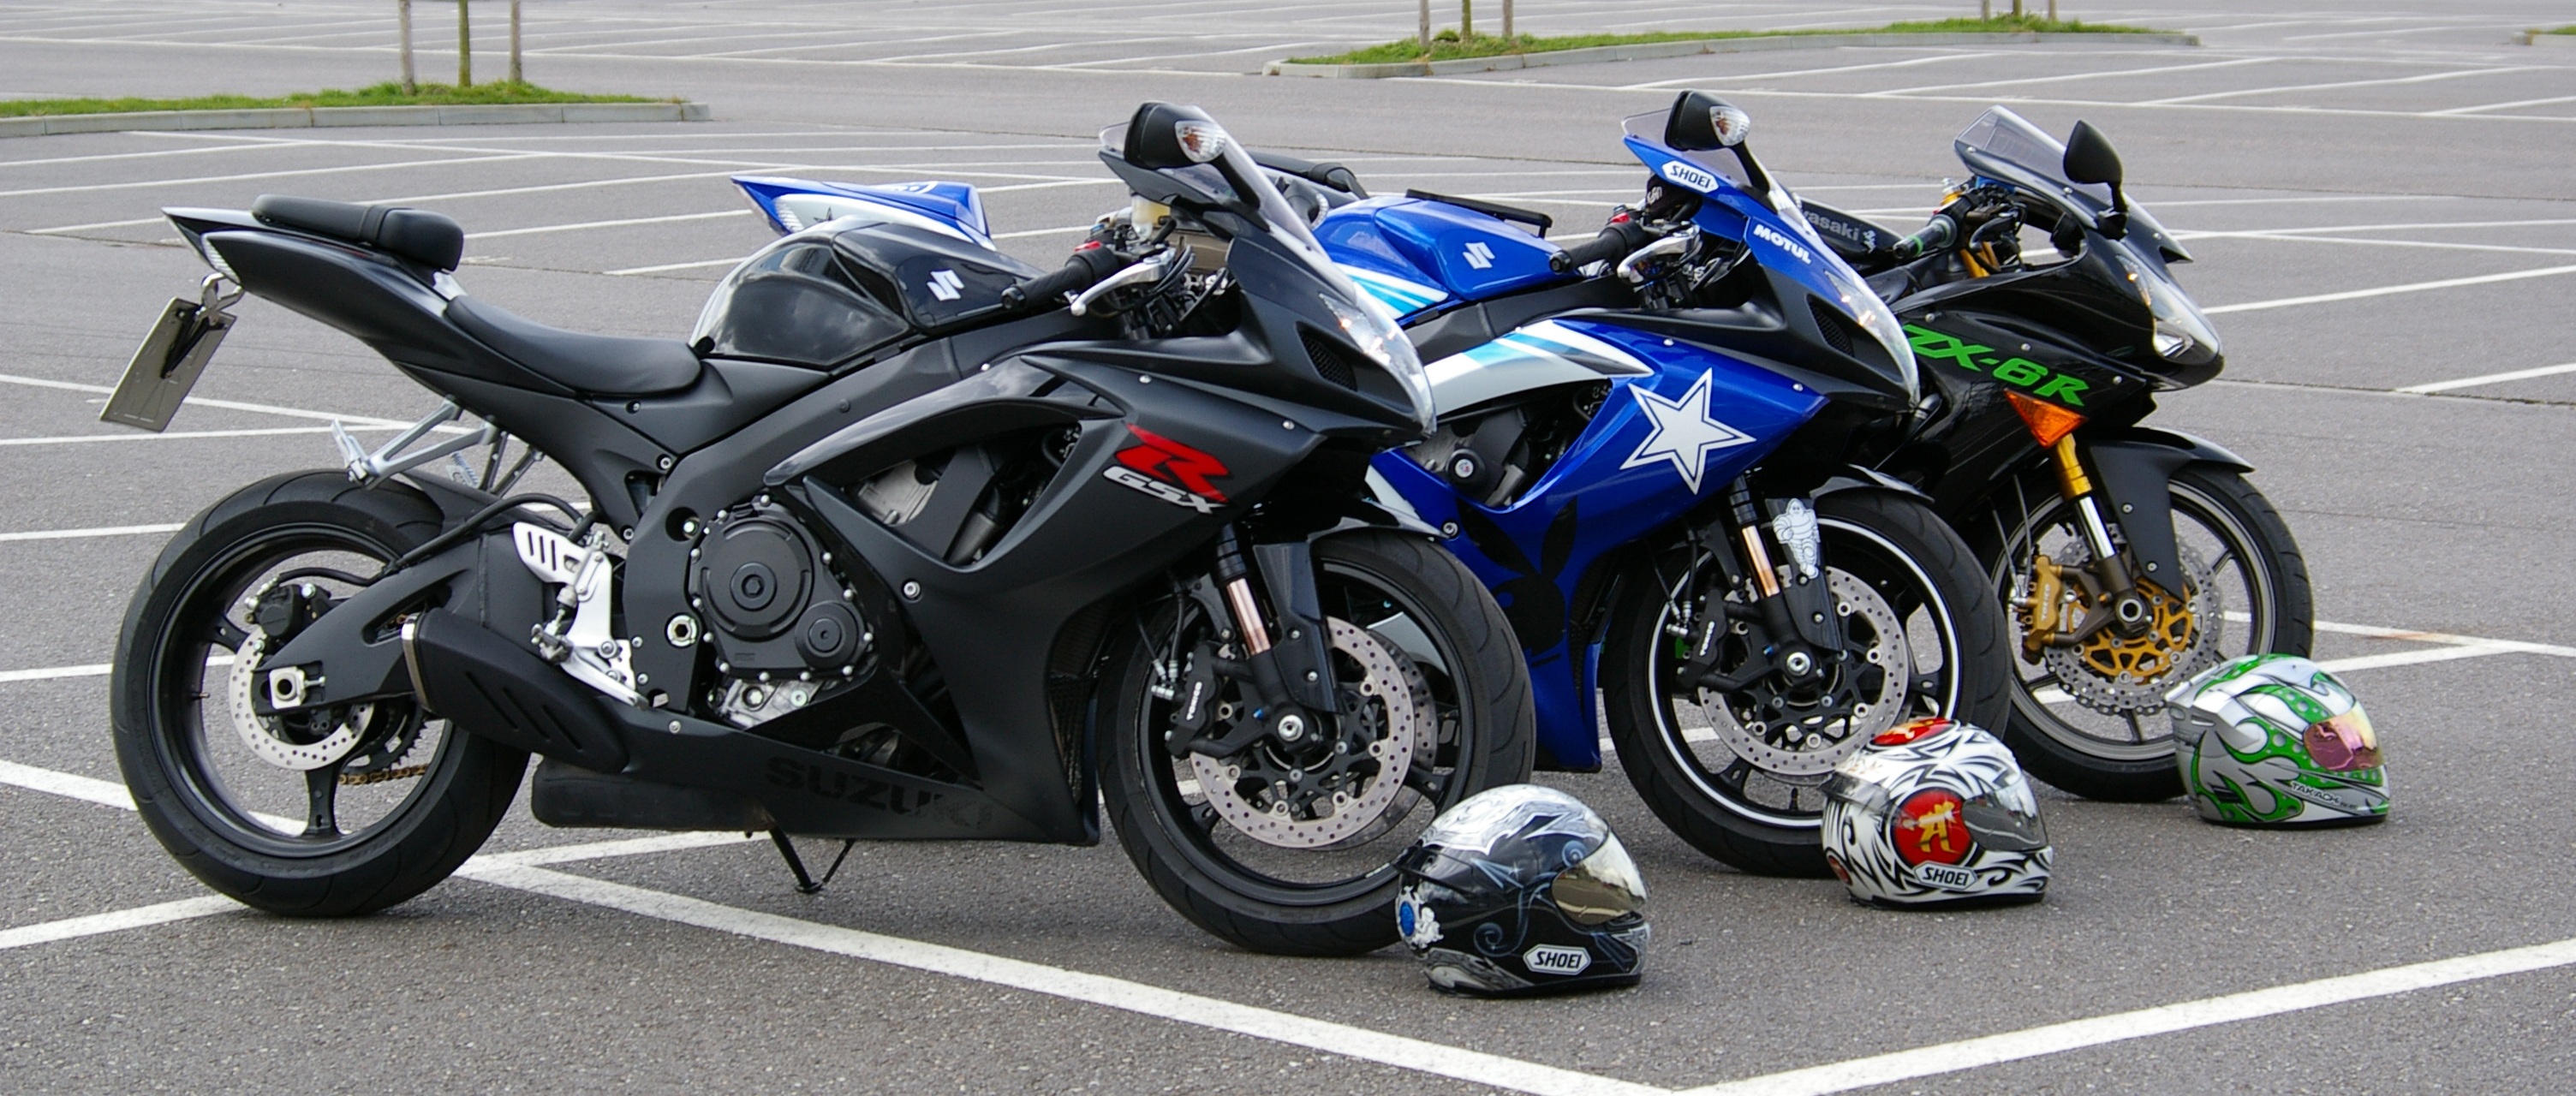 免费照片停车场有三辆川崎摩托车。